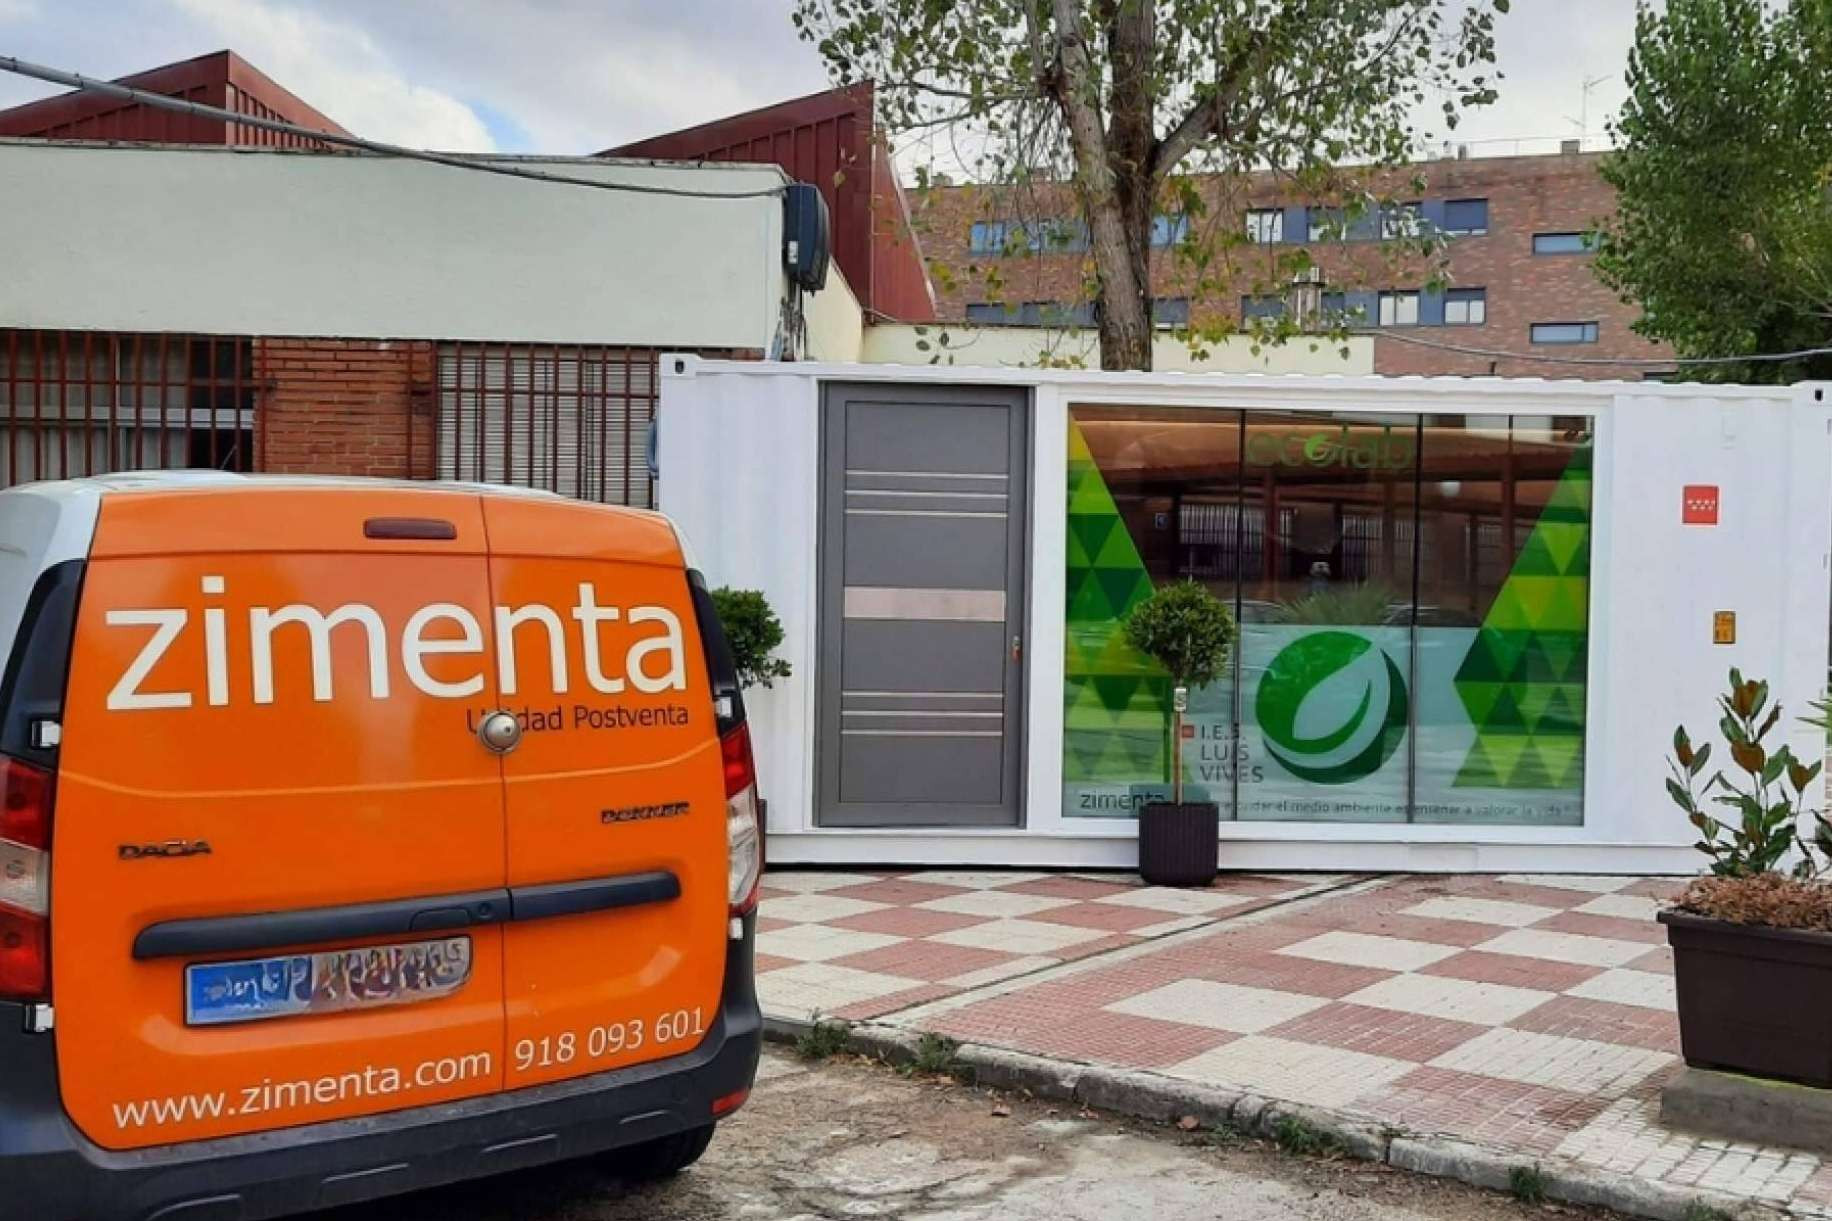  Zimenta, la constructora de renombre en Madrid, que lidera proyectos únicos y de triple impacto 